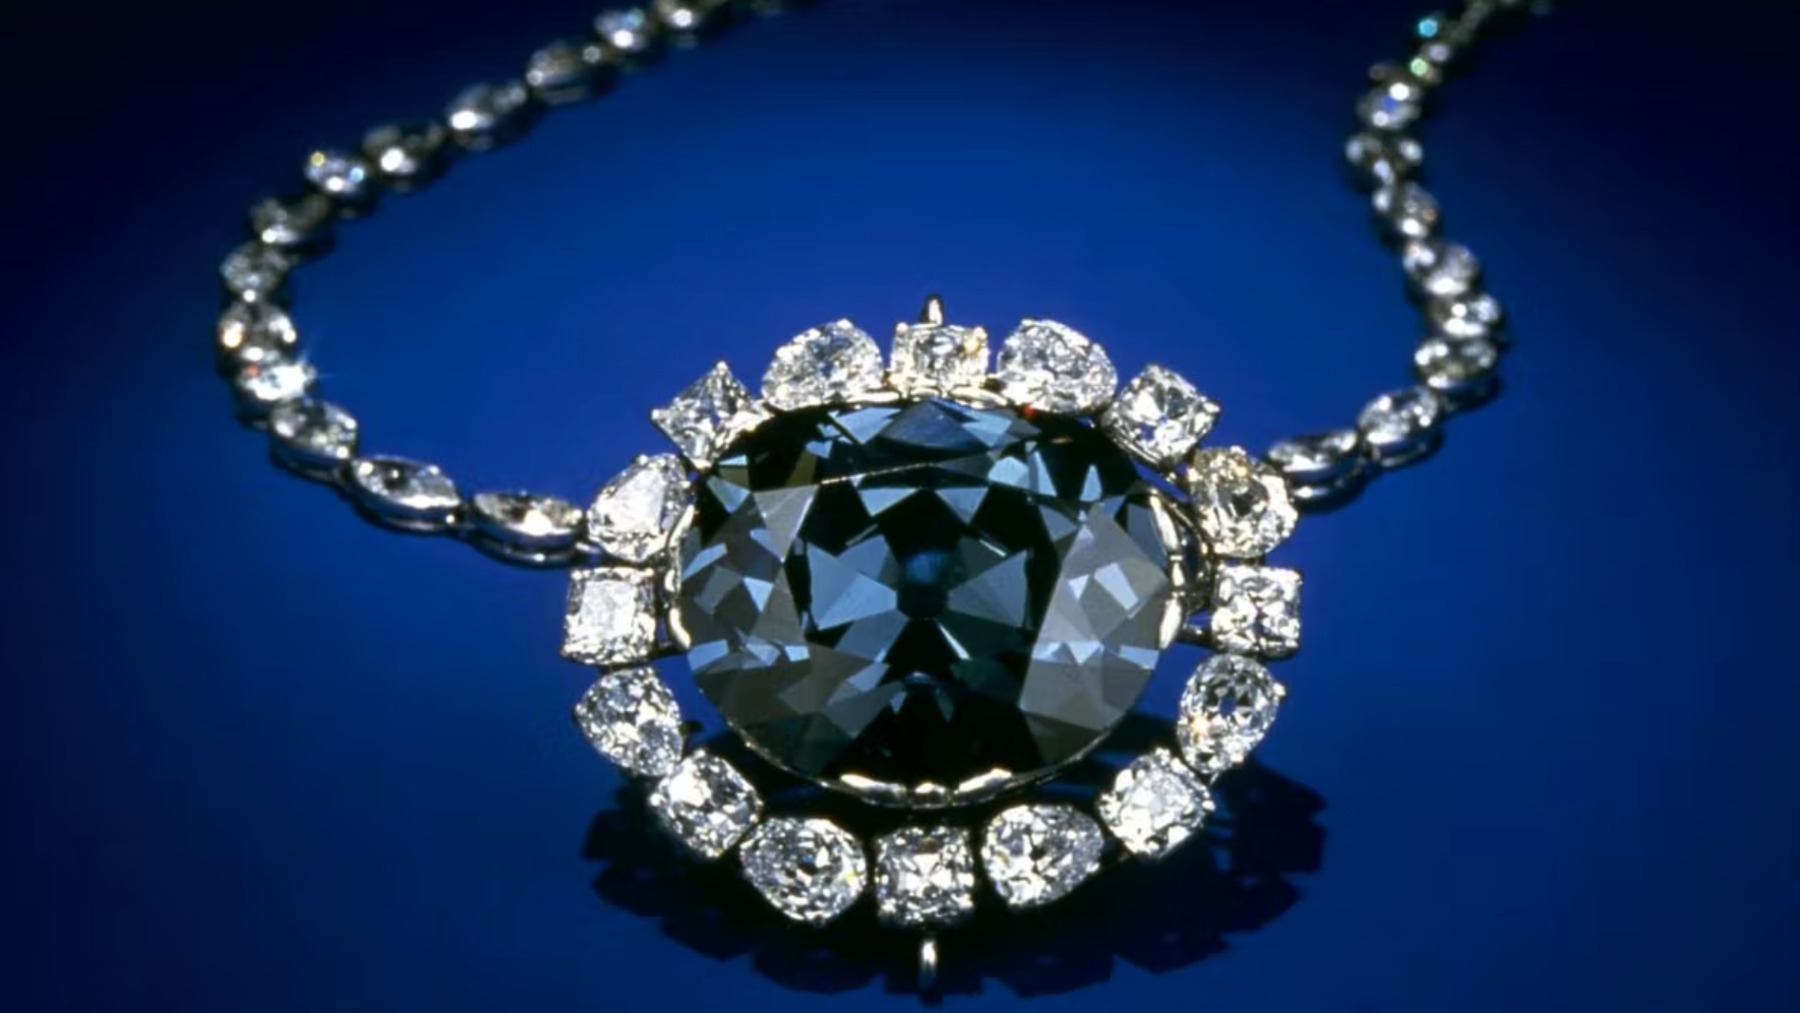 Escrutinio Cilios Hombre rico Las 5 joyas más caras de la historia